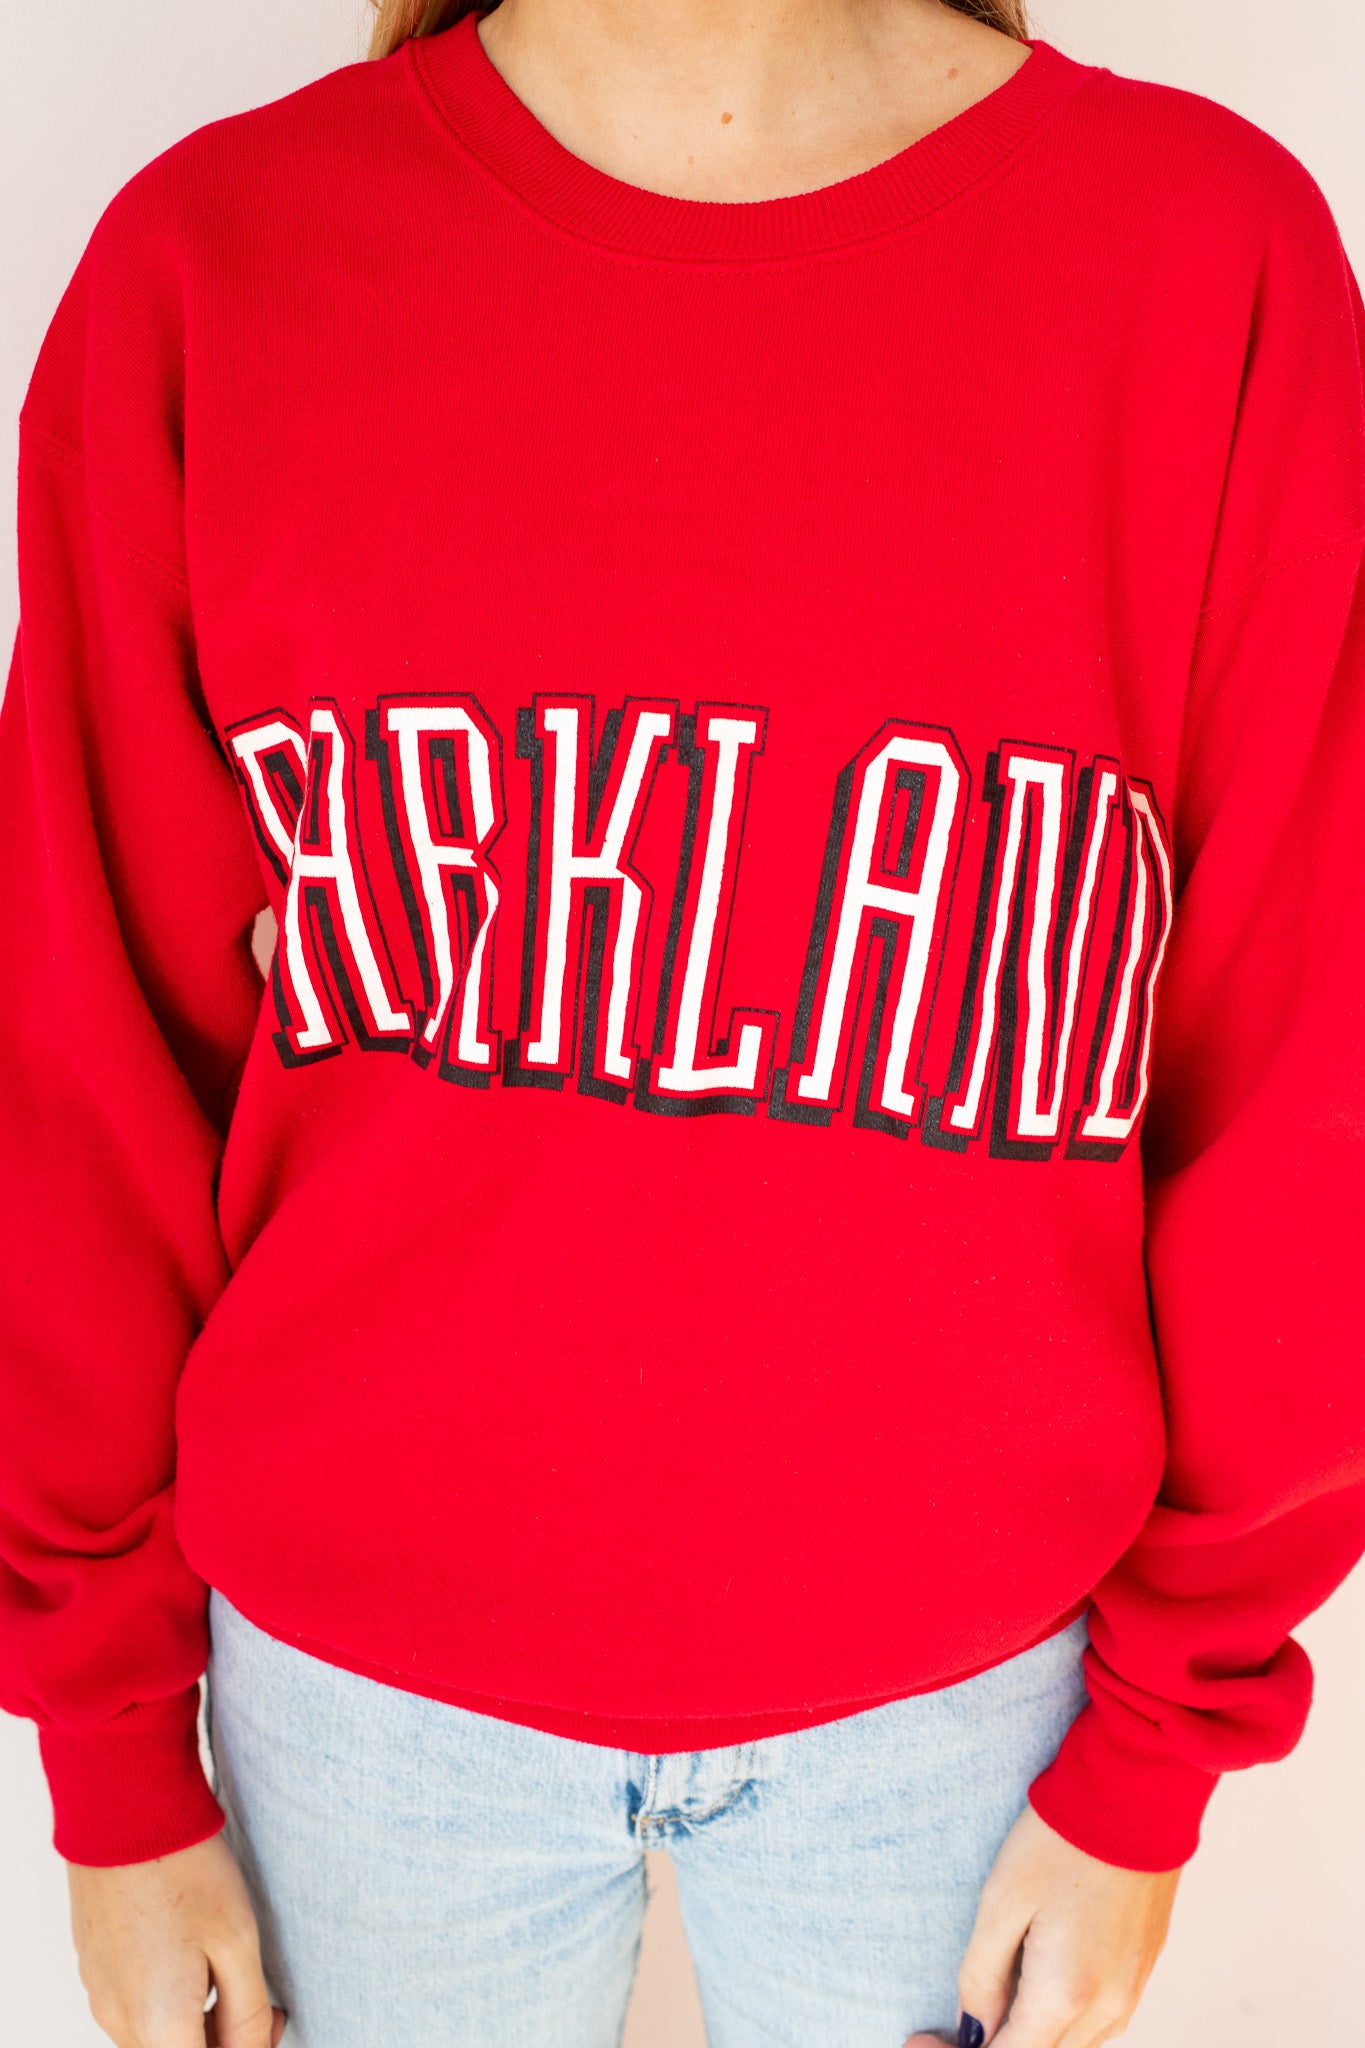 Parkland - Sweatshirt